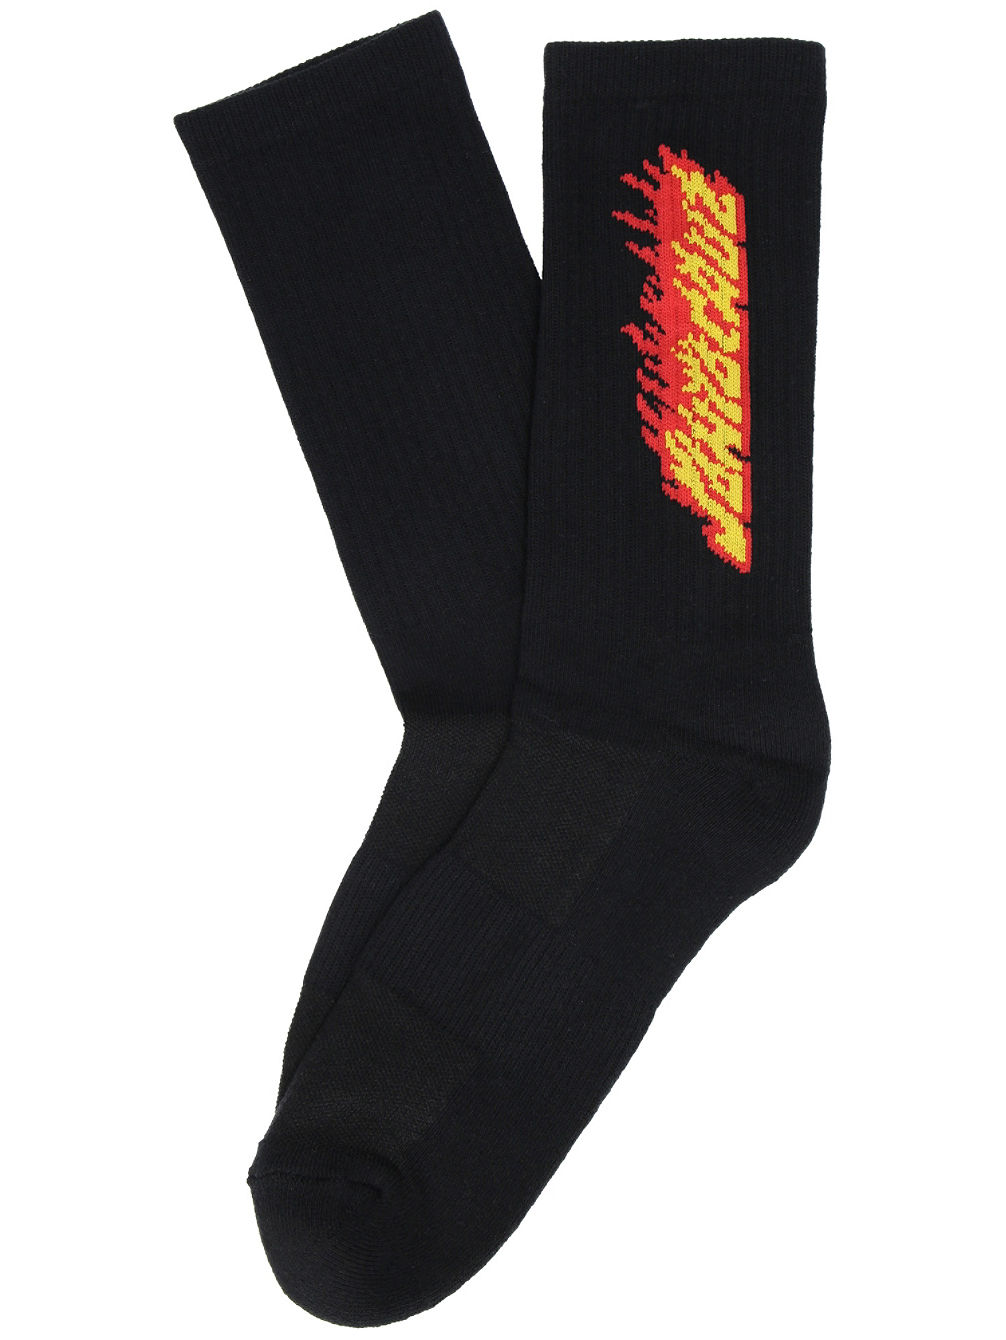 Flaming Stripe Socks